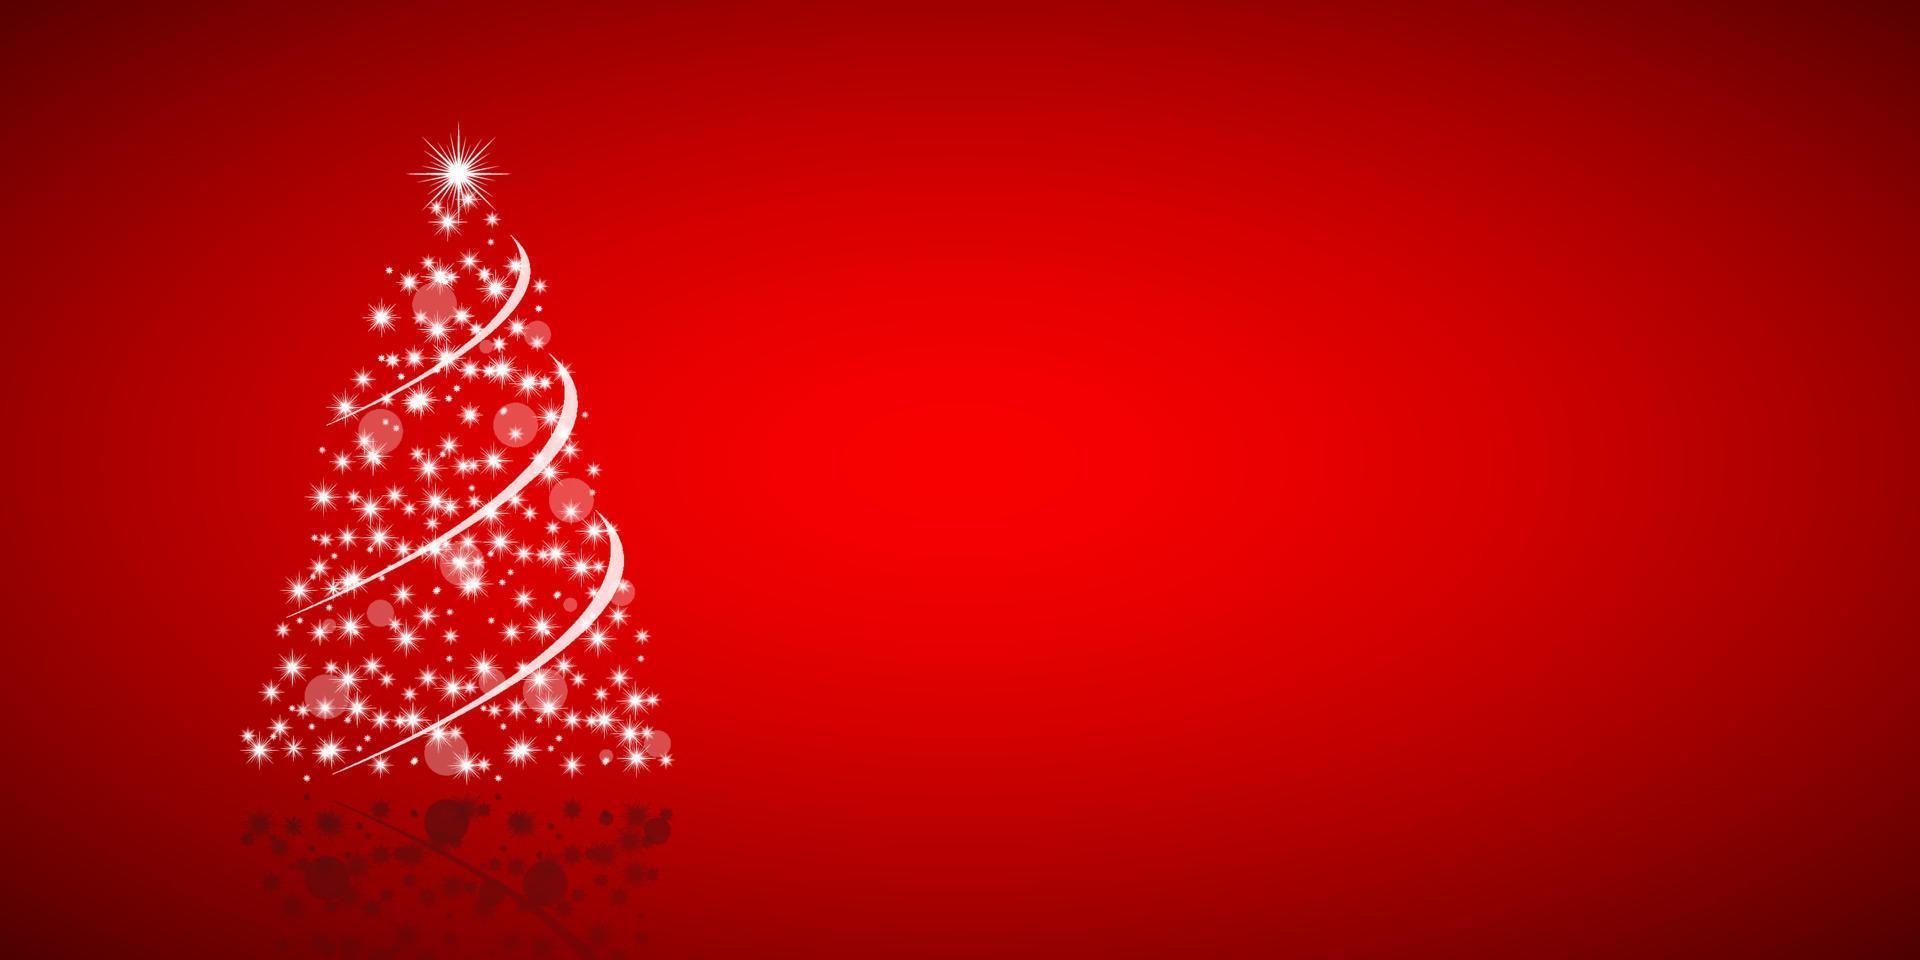 árbol de navidad de estrellas sobre fondo rojo, tarjeta de felicitación navideña, tarjeta de feliz navidad vector